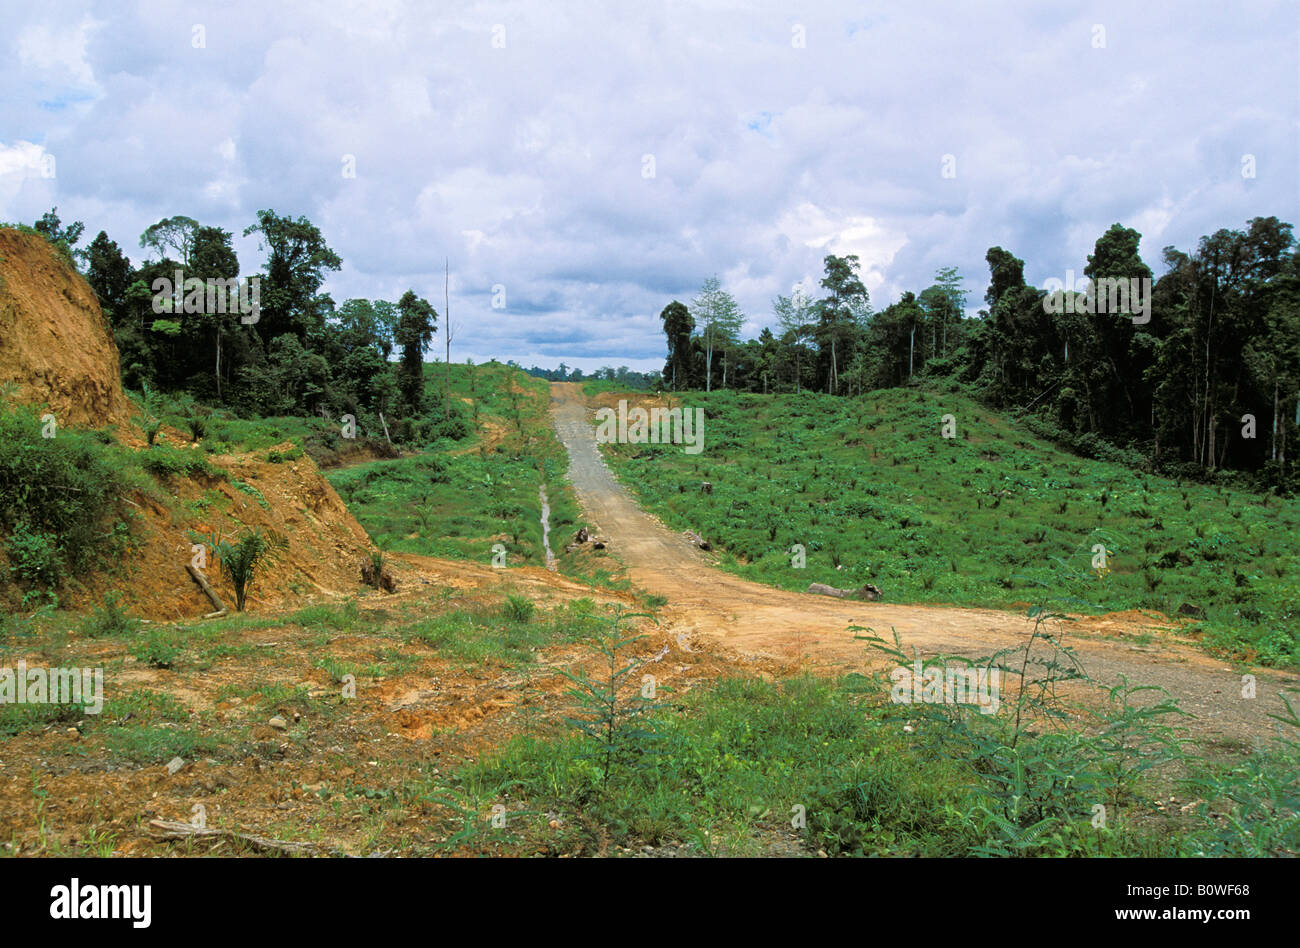 Los jóvenes de palma aceitera (Elaeis) plantación en la parte delantera de la selva, la destrucción de pluviselvas, Sabah, Borneo, en el sudeste de Asia Foto de stock